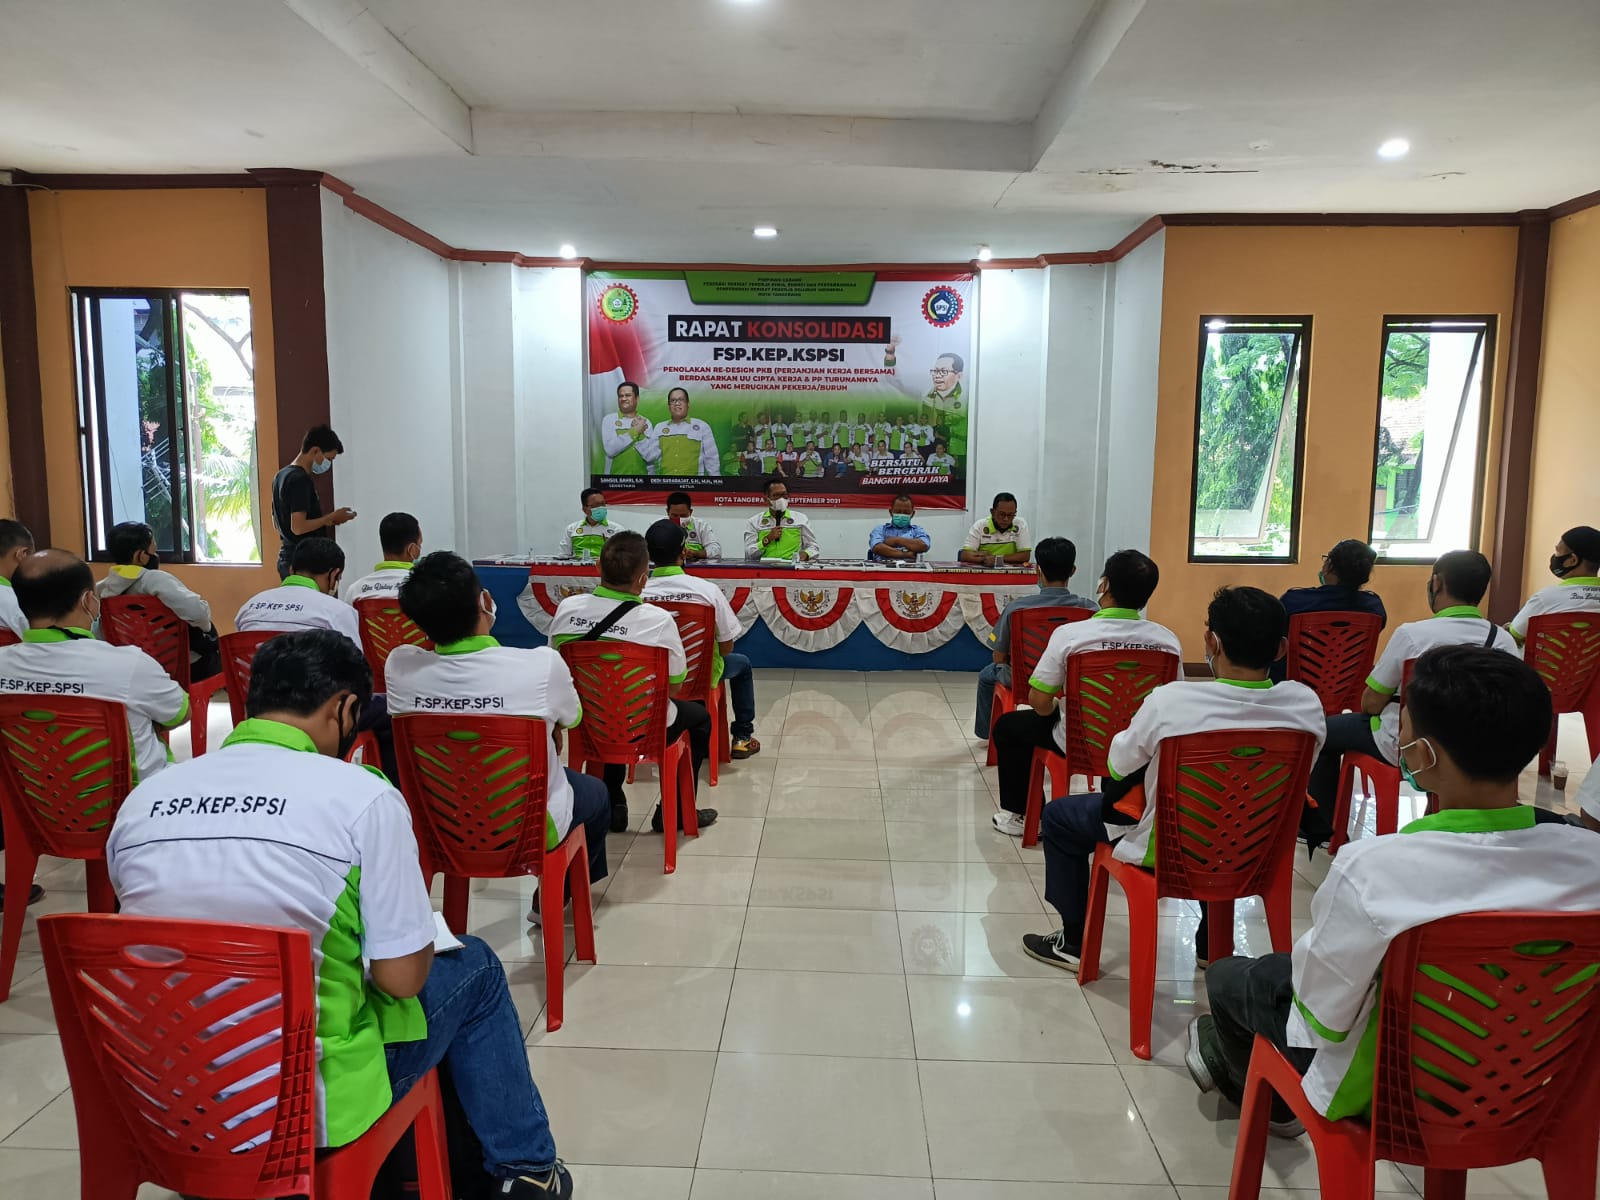 Rapat konsolidasi yang di hadiri oleh para buruh yang tergabung dalam Pimpinan Cabang Federasi Serikat Pekerja Kimia, Energi, dan Pertambangan Konfederasi Serikat Pekerja Seluruh Indonesia (FSP KEP KSPSI) Kota Tangerang.